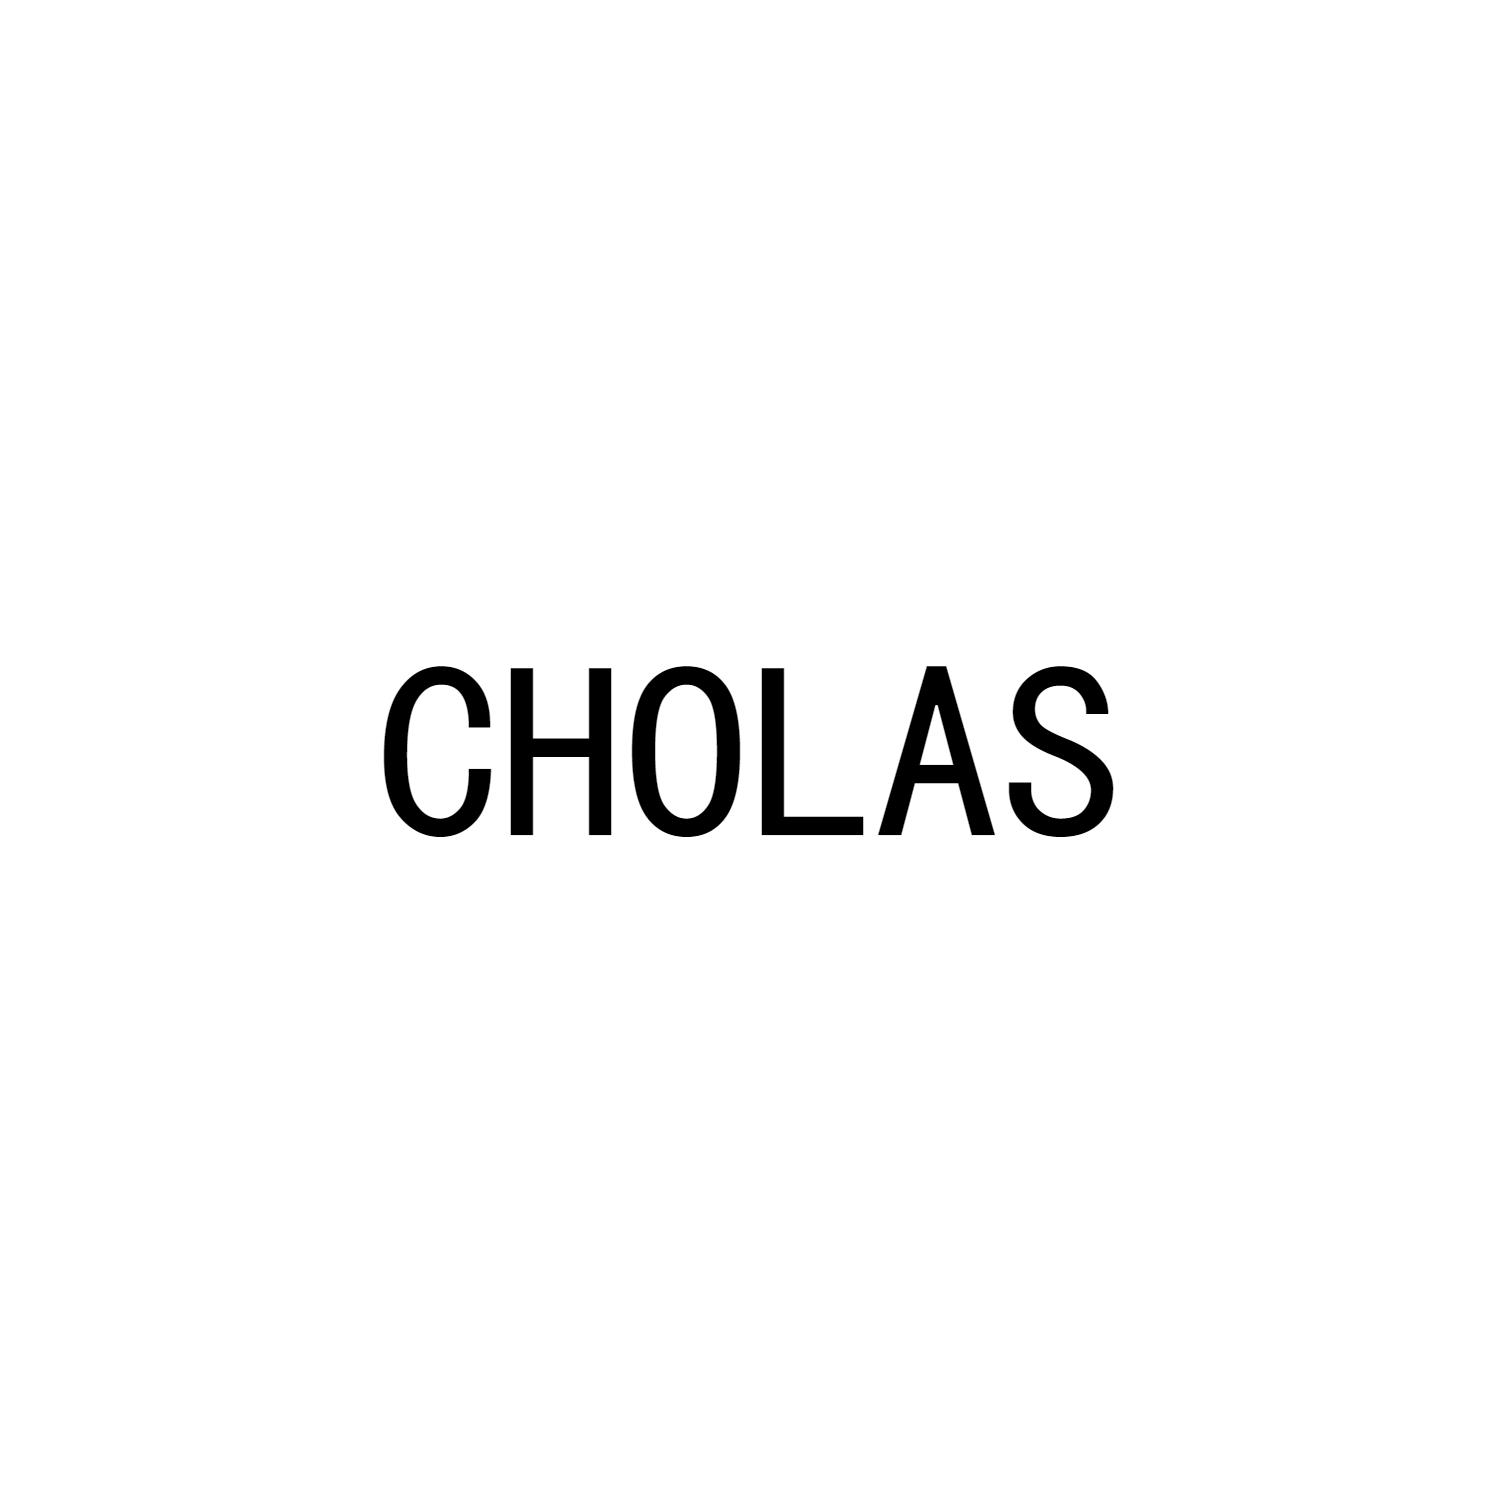 CHOLAS